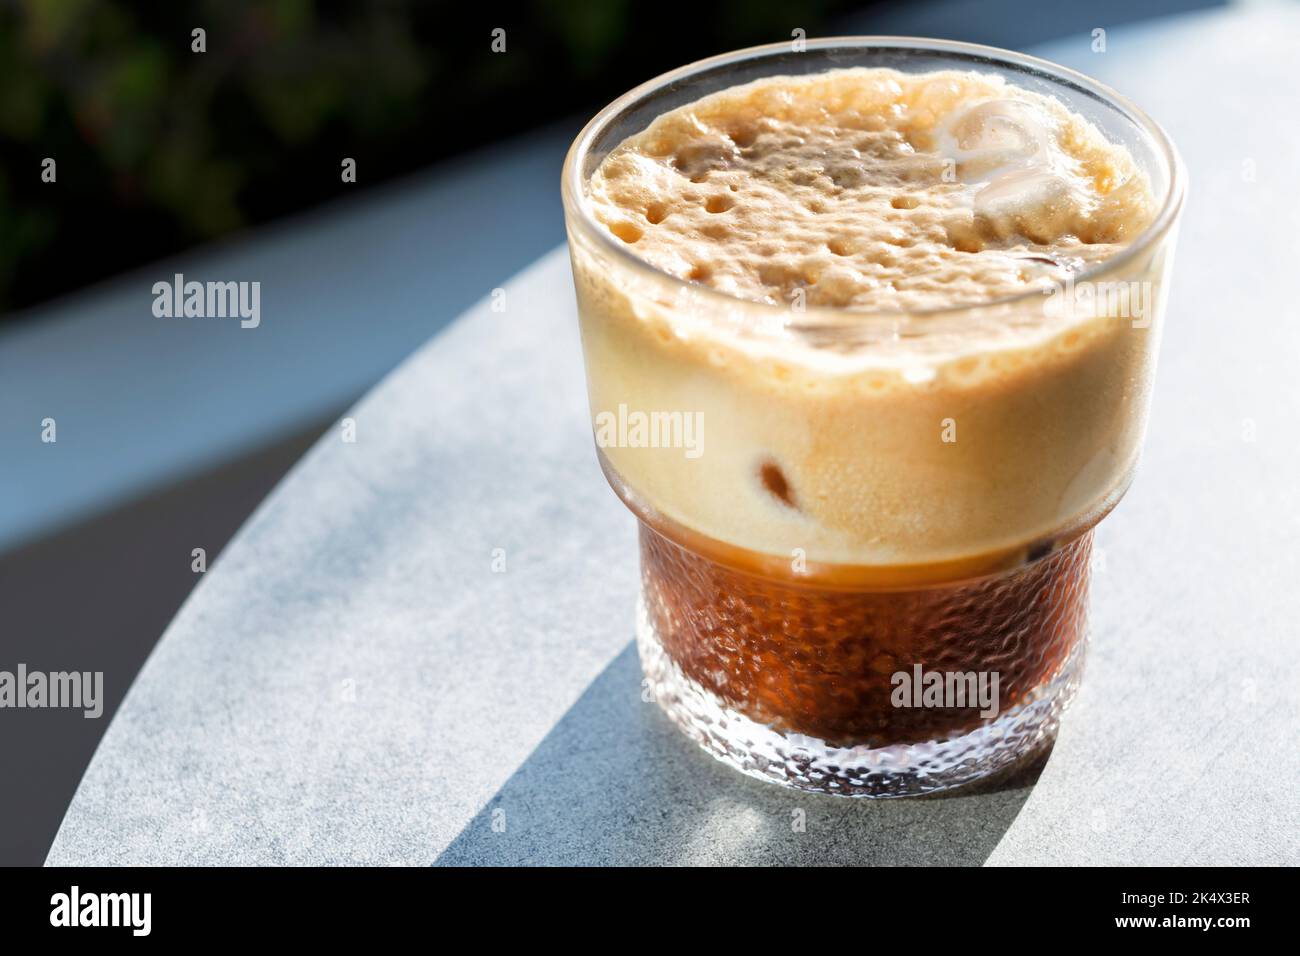 Una bevanda fresca di caffe' ghiacciato o una bevanda servita ad un tavolo fuori da un cafe'. La bevanda ha una crema densa, una bevanda rinfrescante in una giornata calda Foto Stock